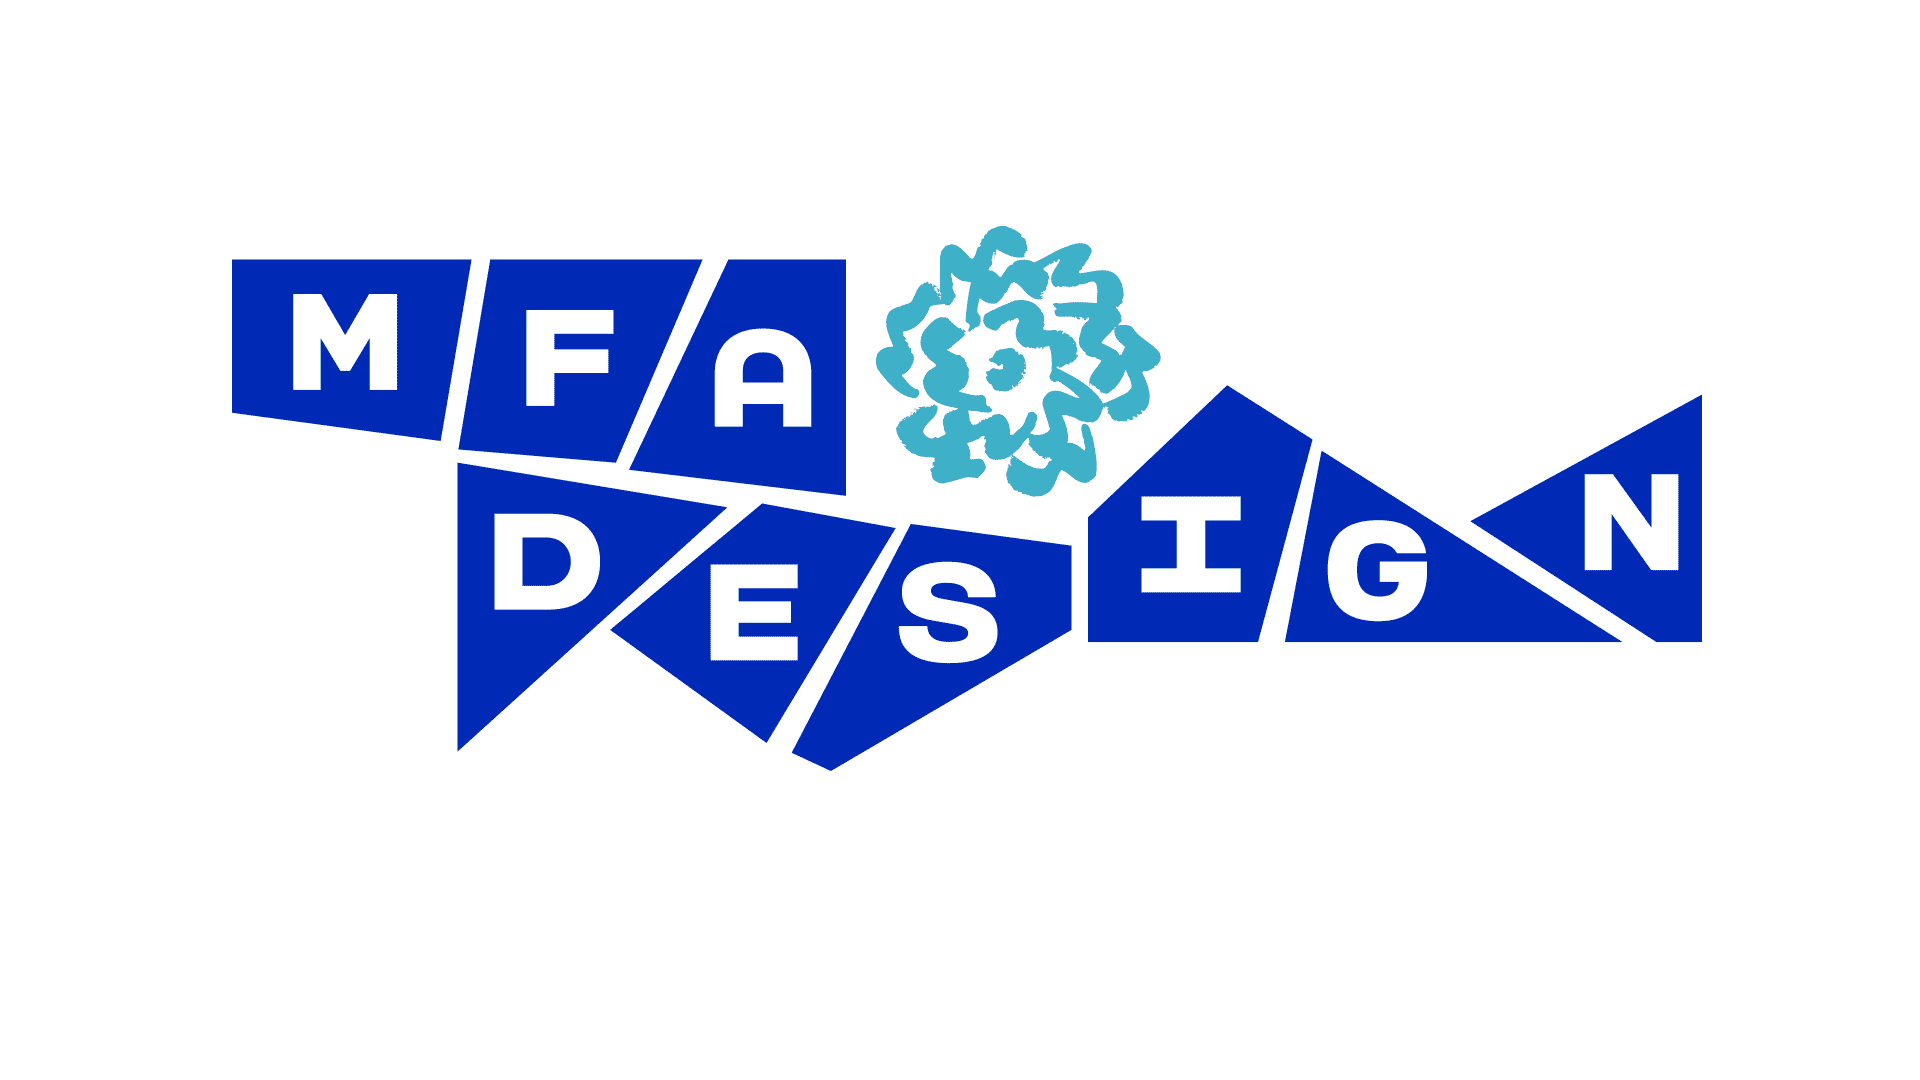 MFA Design logo in blue